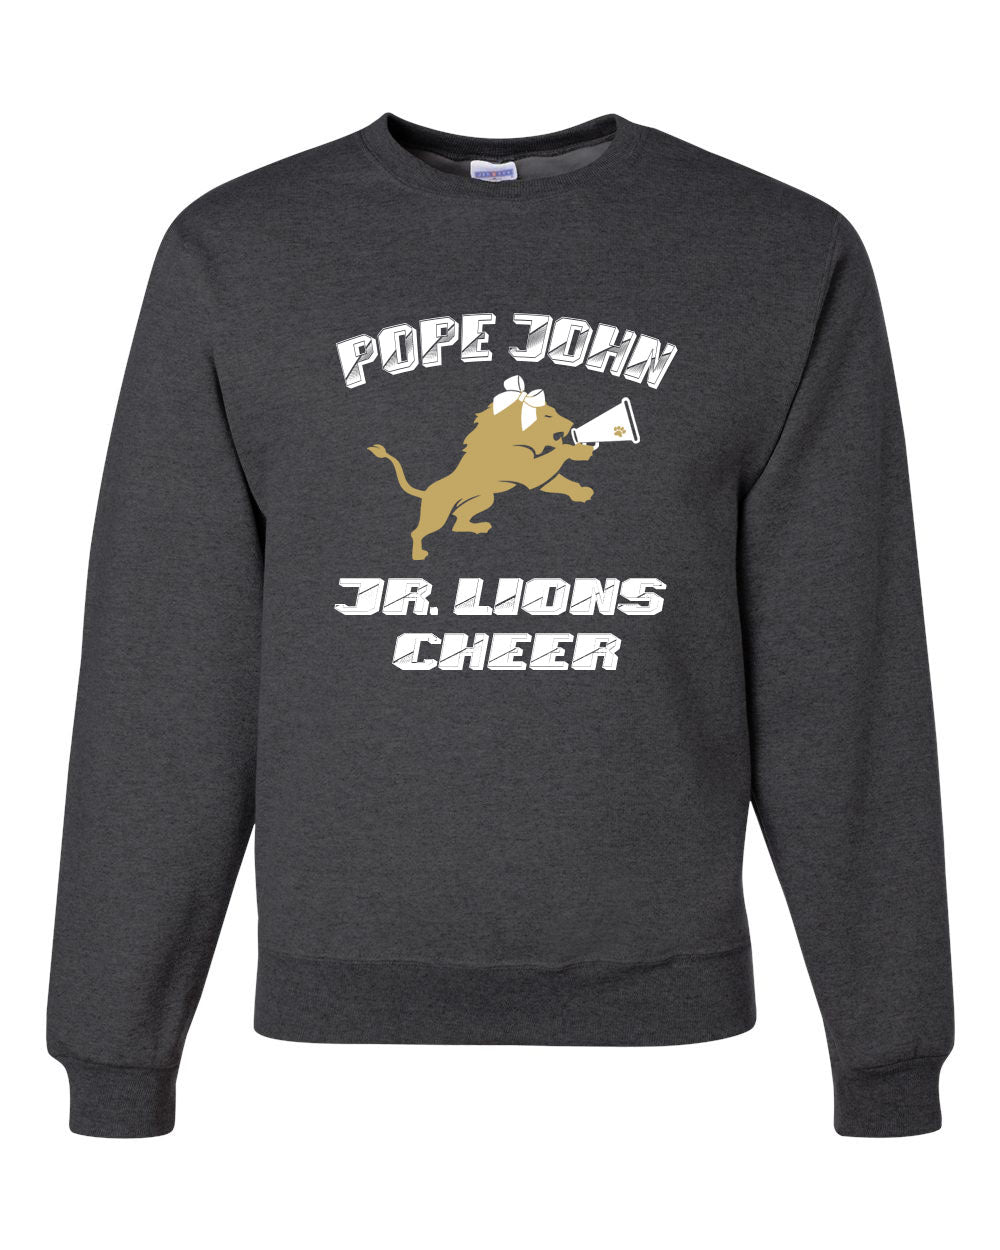 Lions Cheer Design 3 non hooded sweatshirt